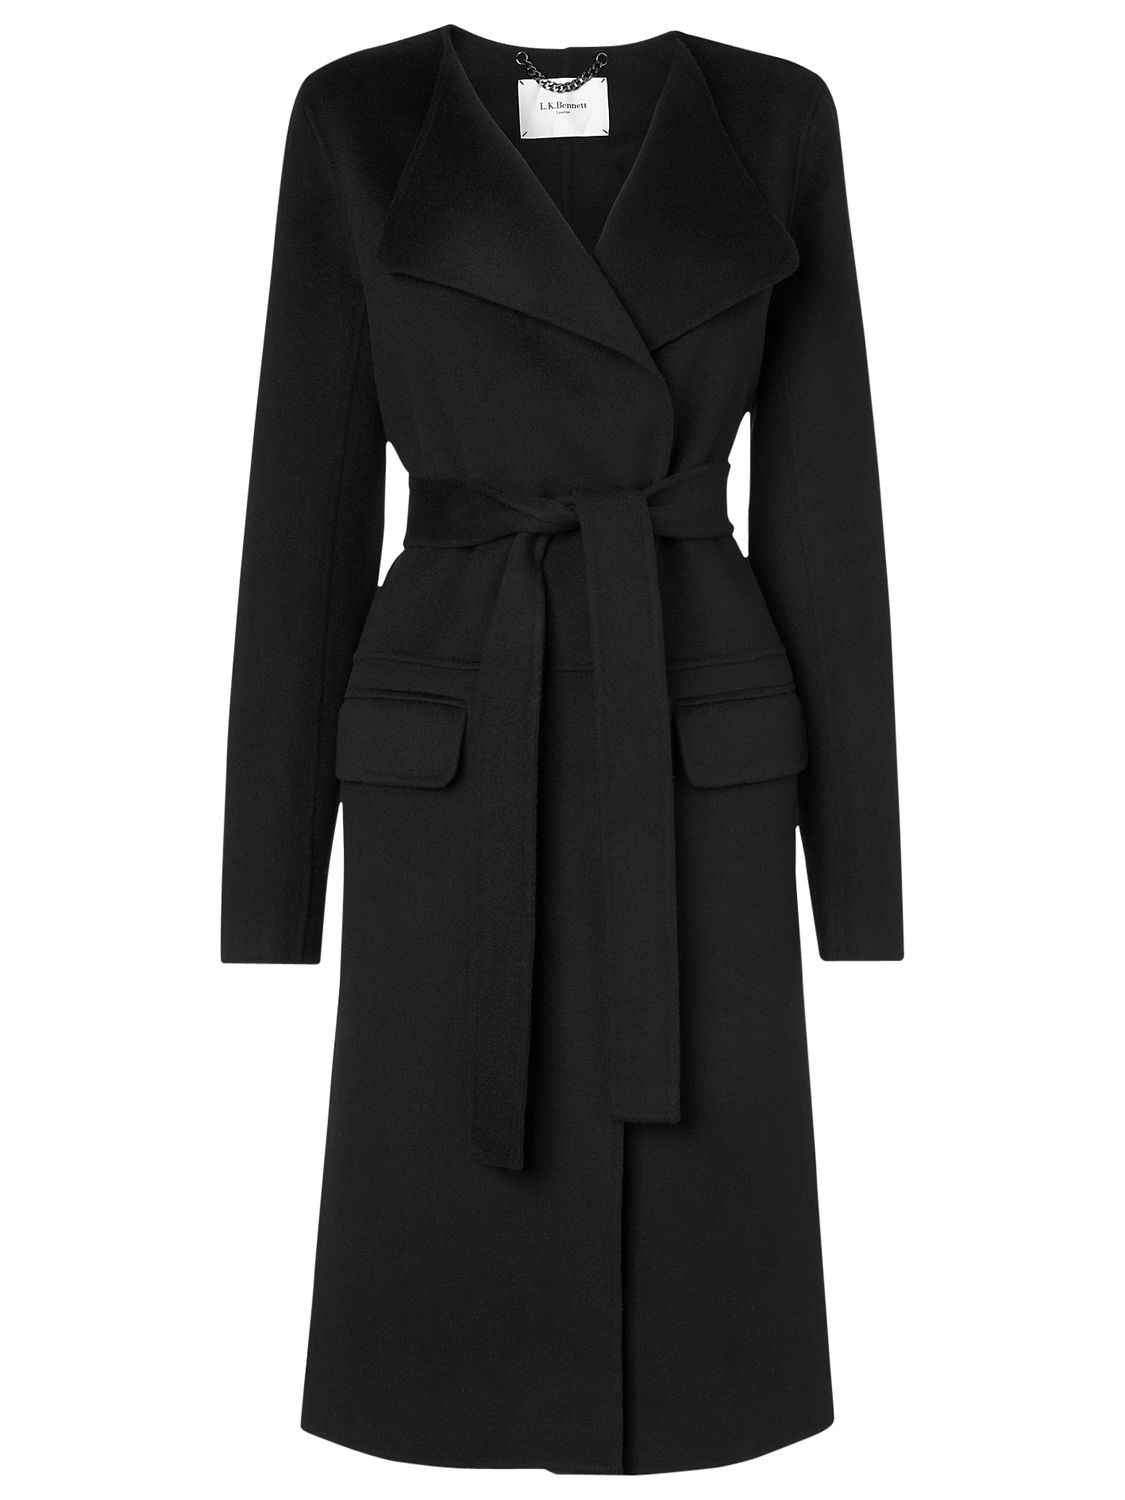 L.K. Bennett Lindi Coat, Black at John Lewis & Partners